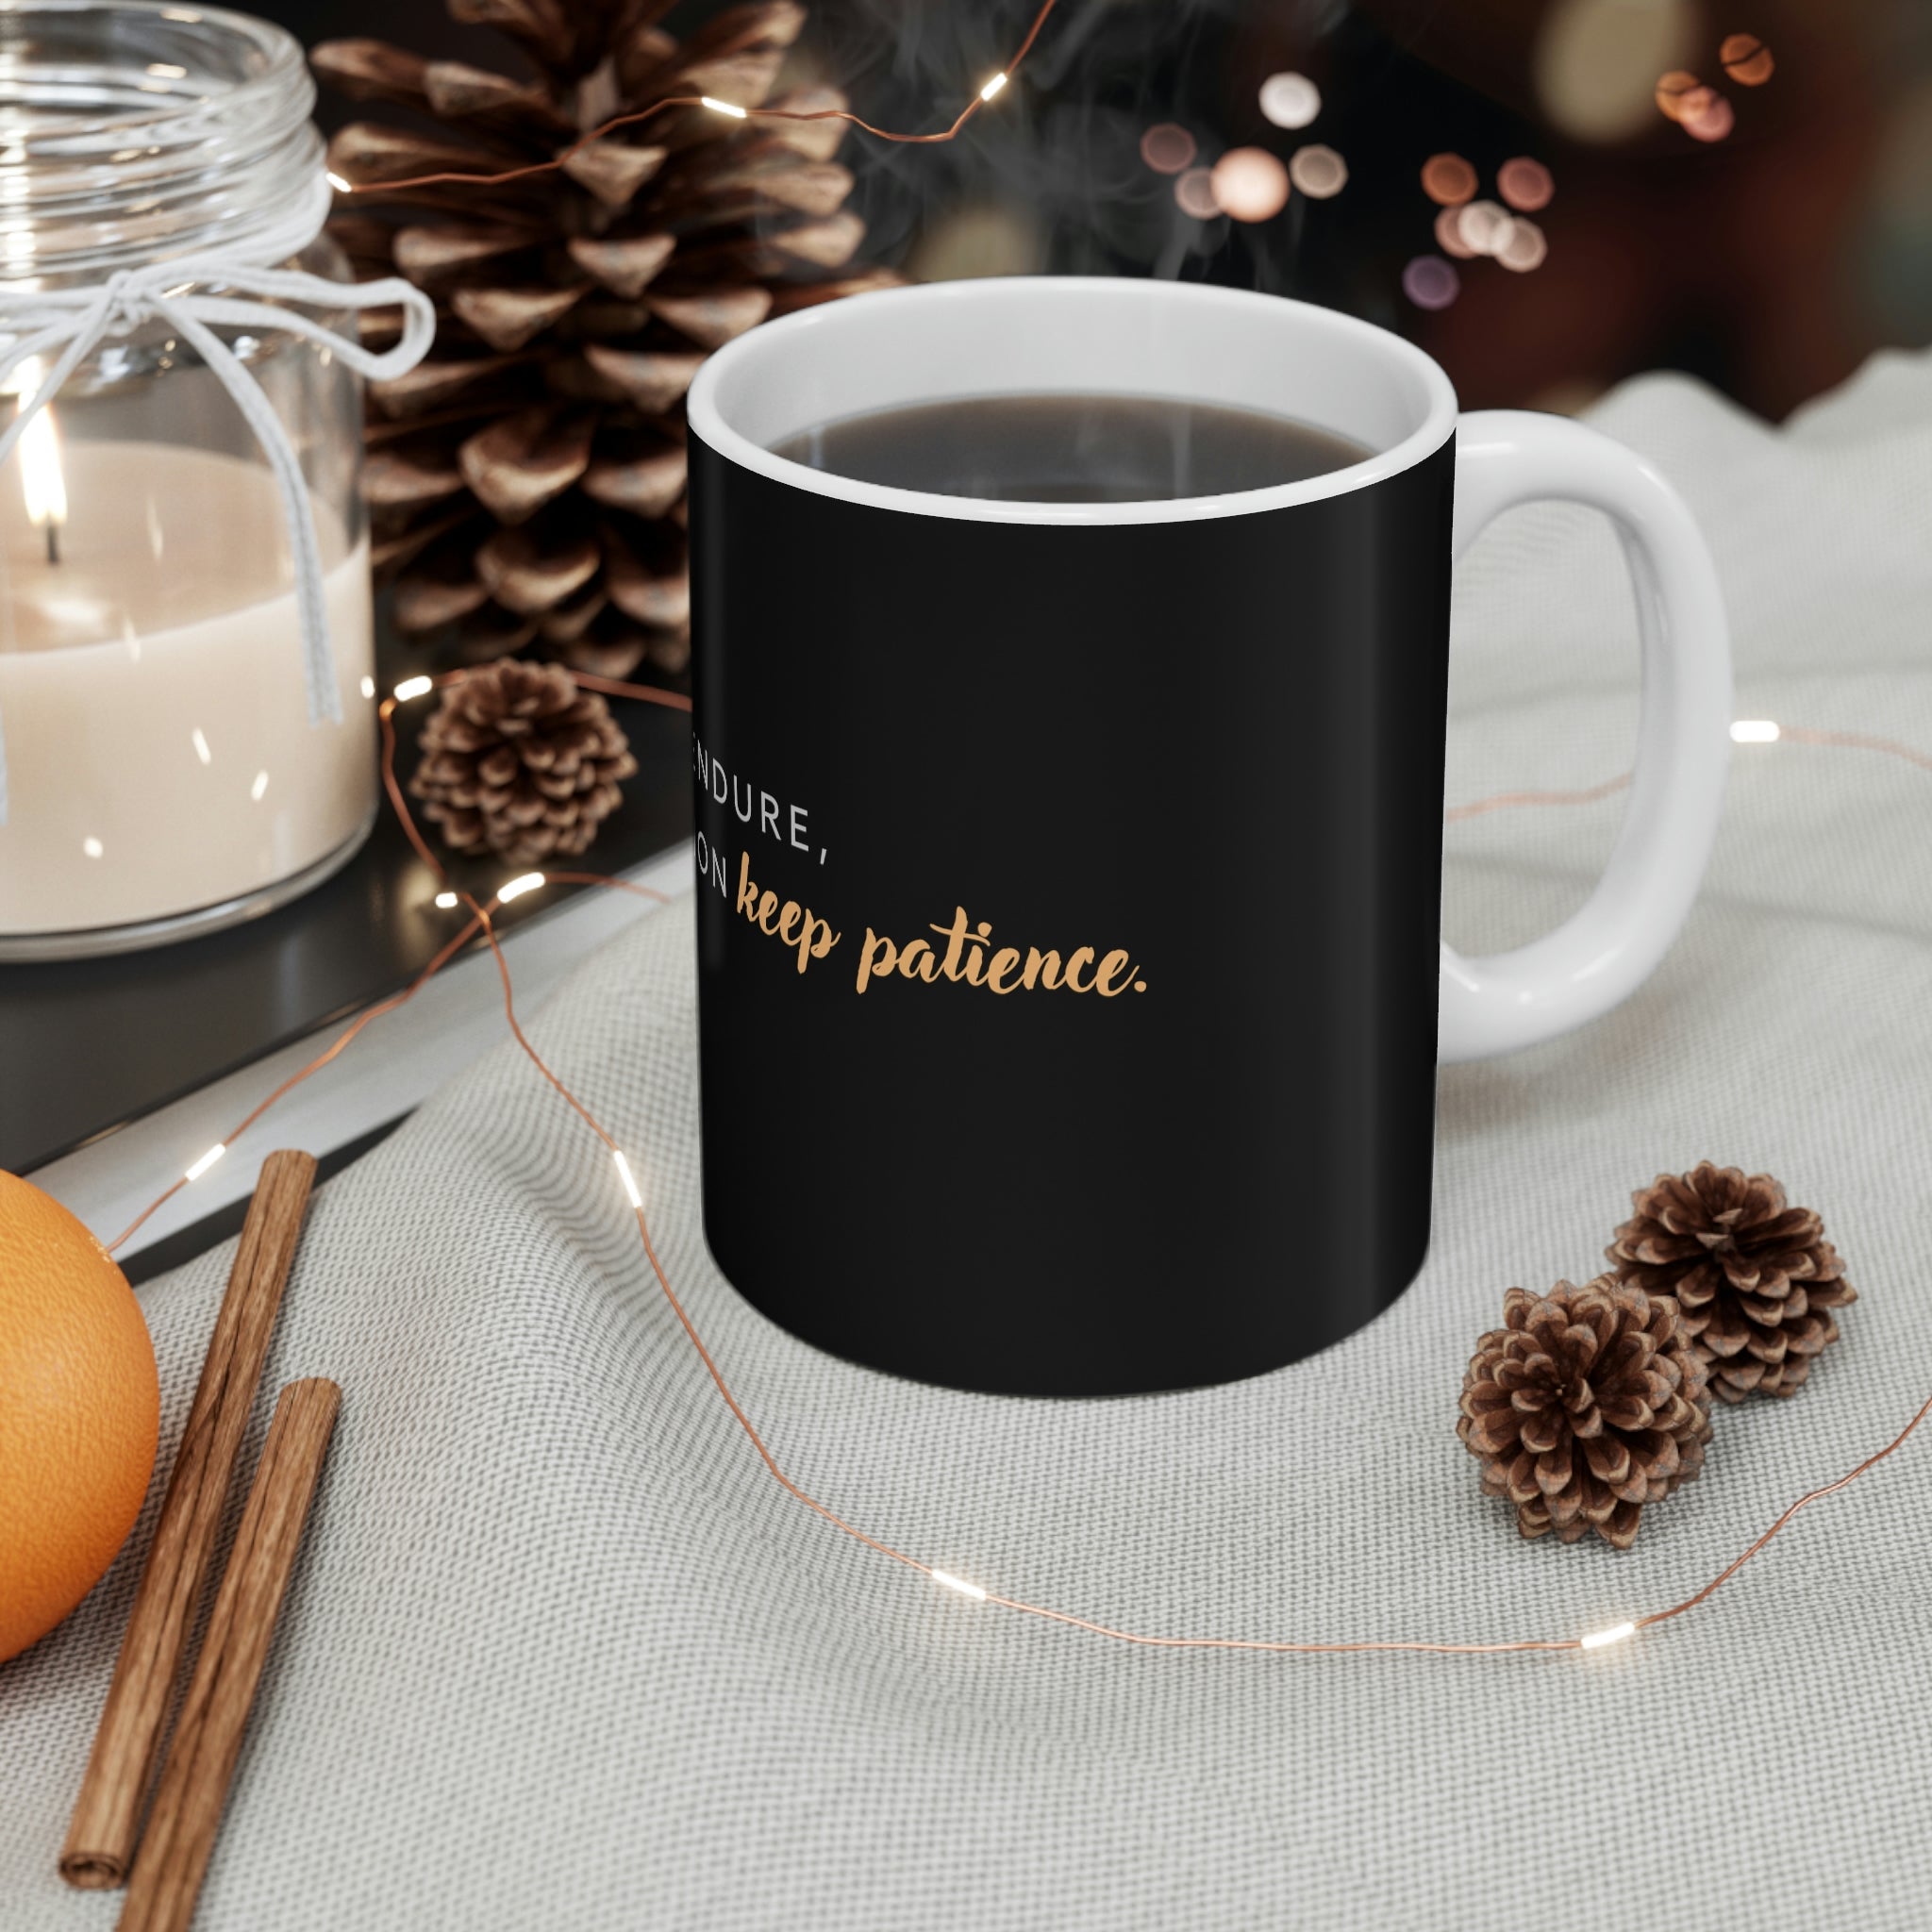 Keep Patience Coffee Mug